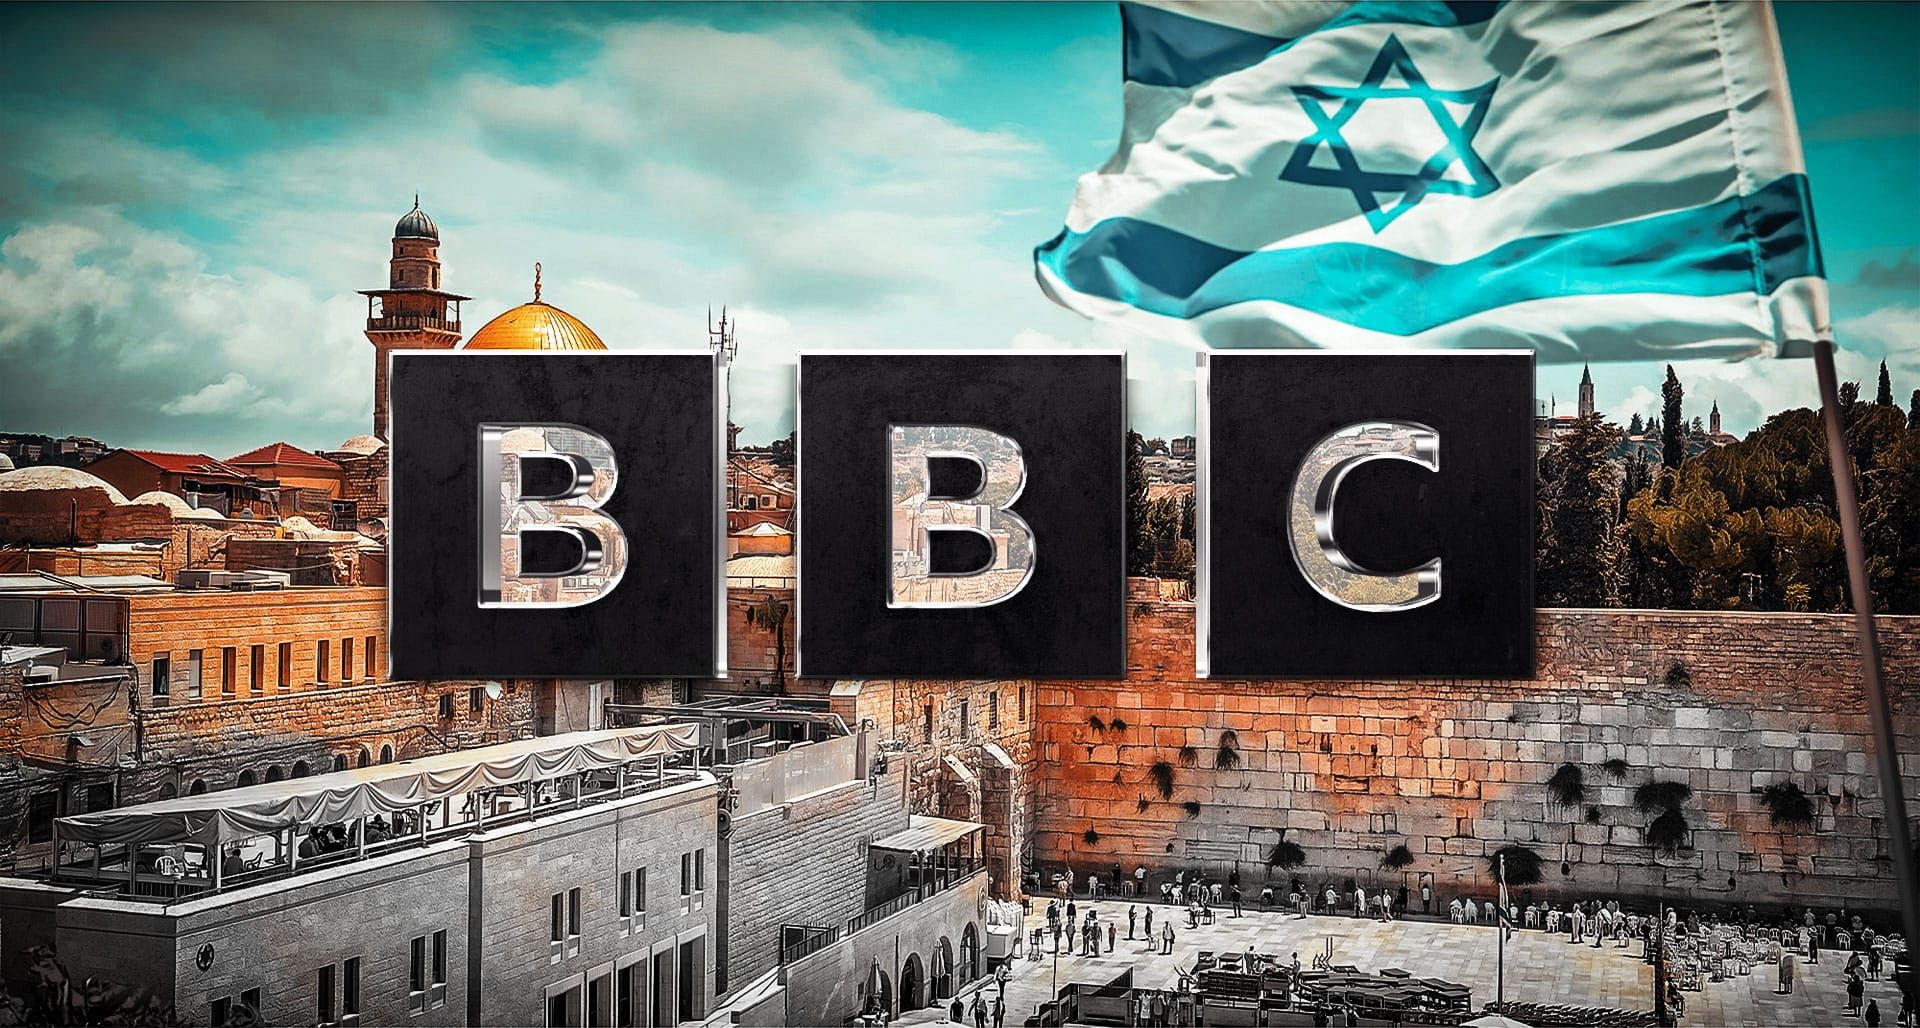 BBC Jerusalem pastor Credit: Nick Brundle Photography via Shutterstock